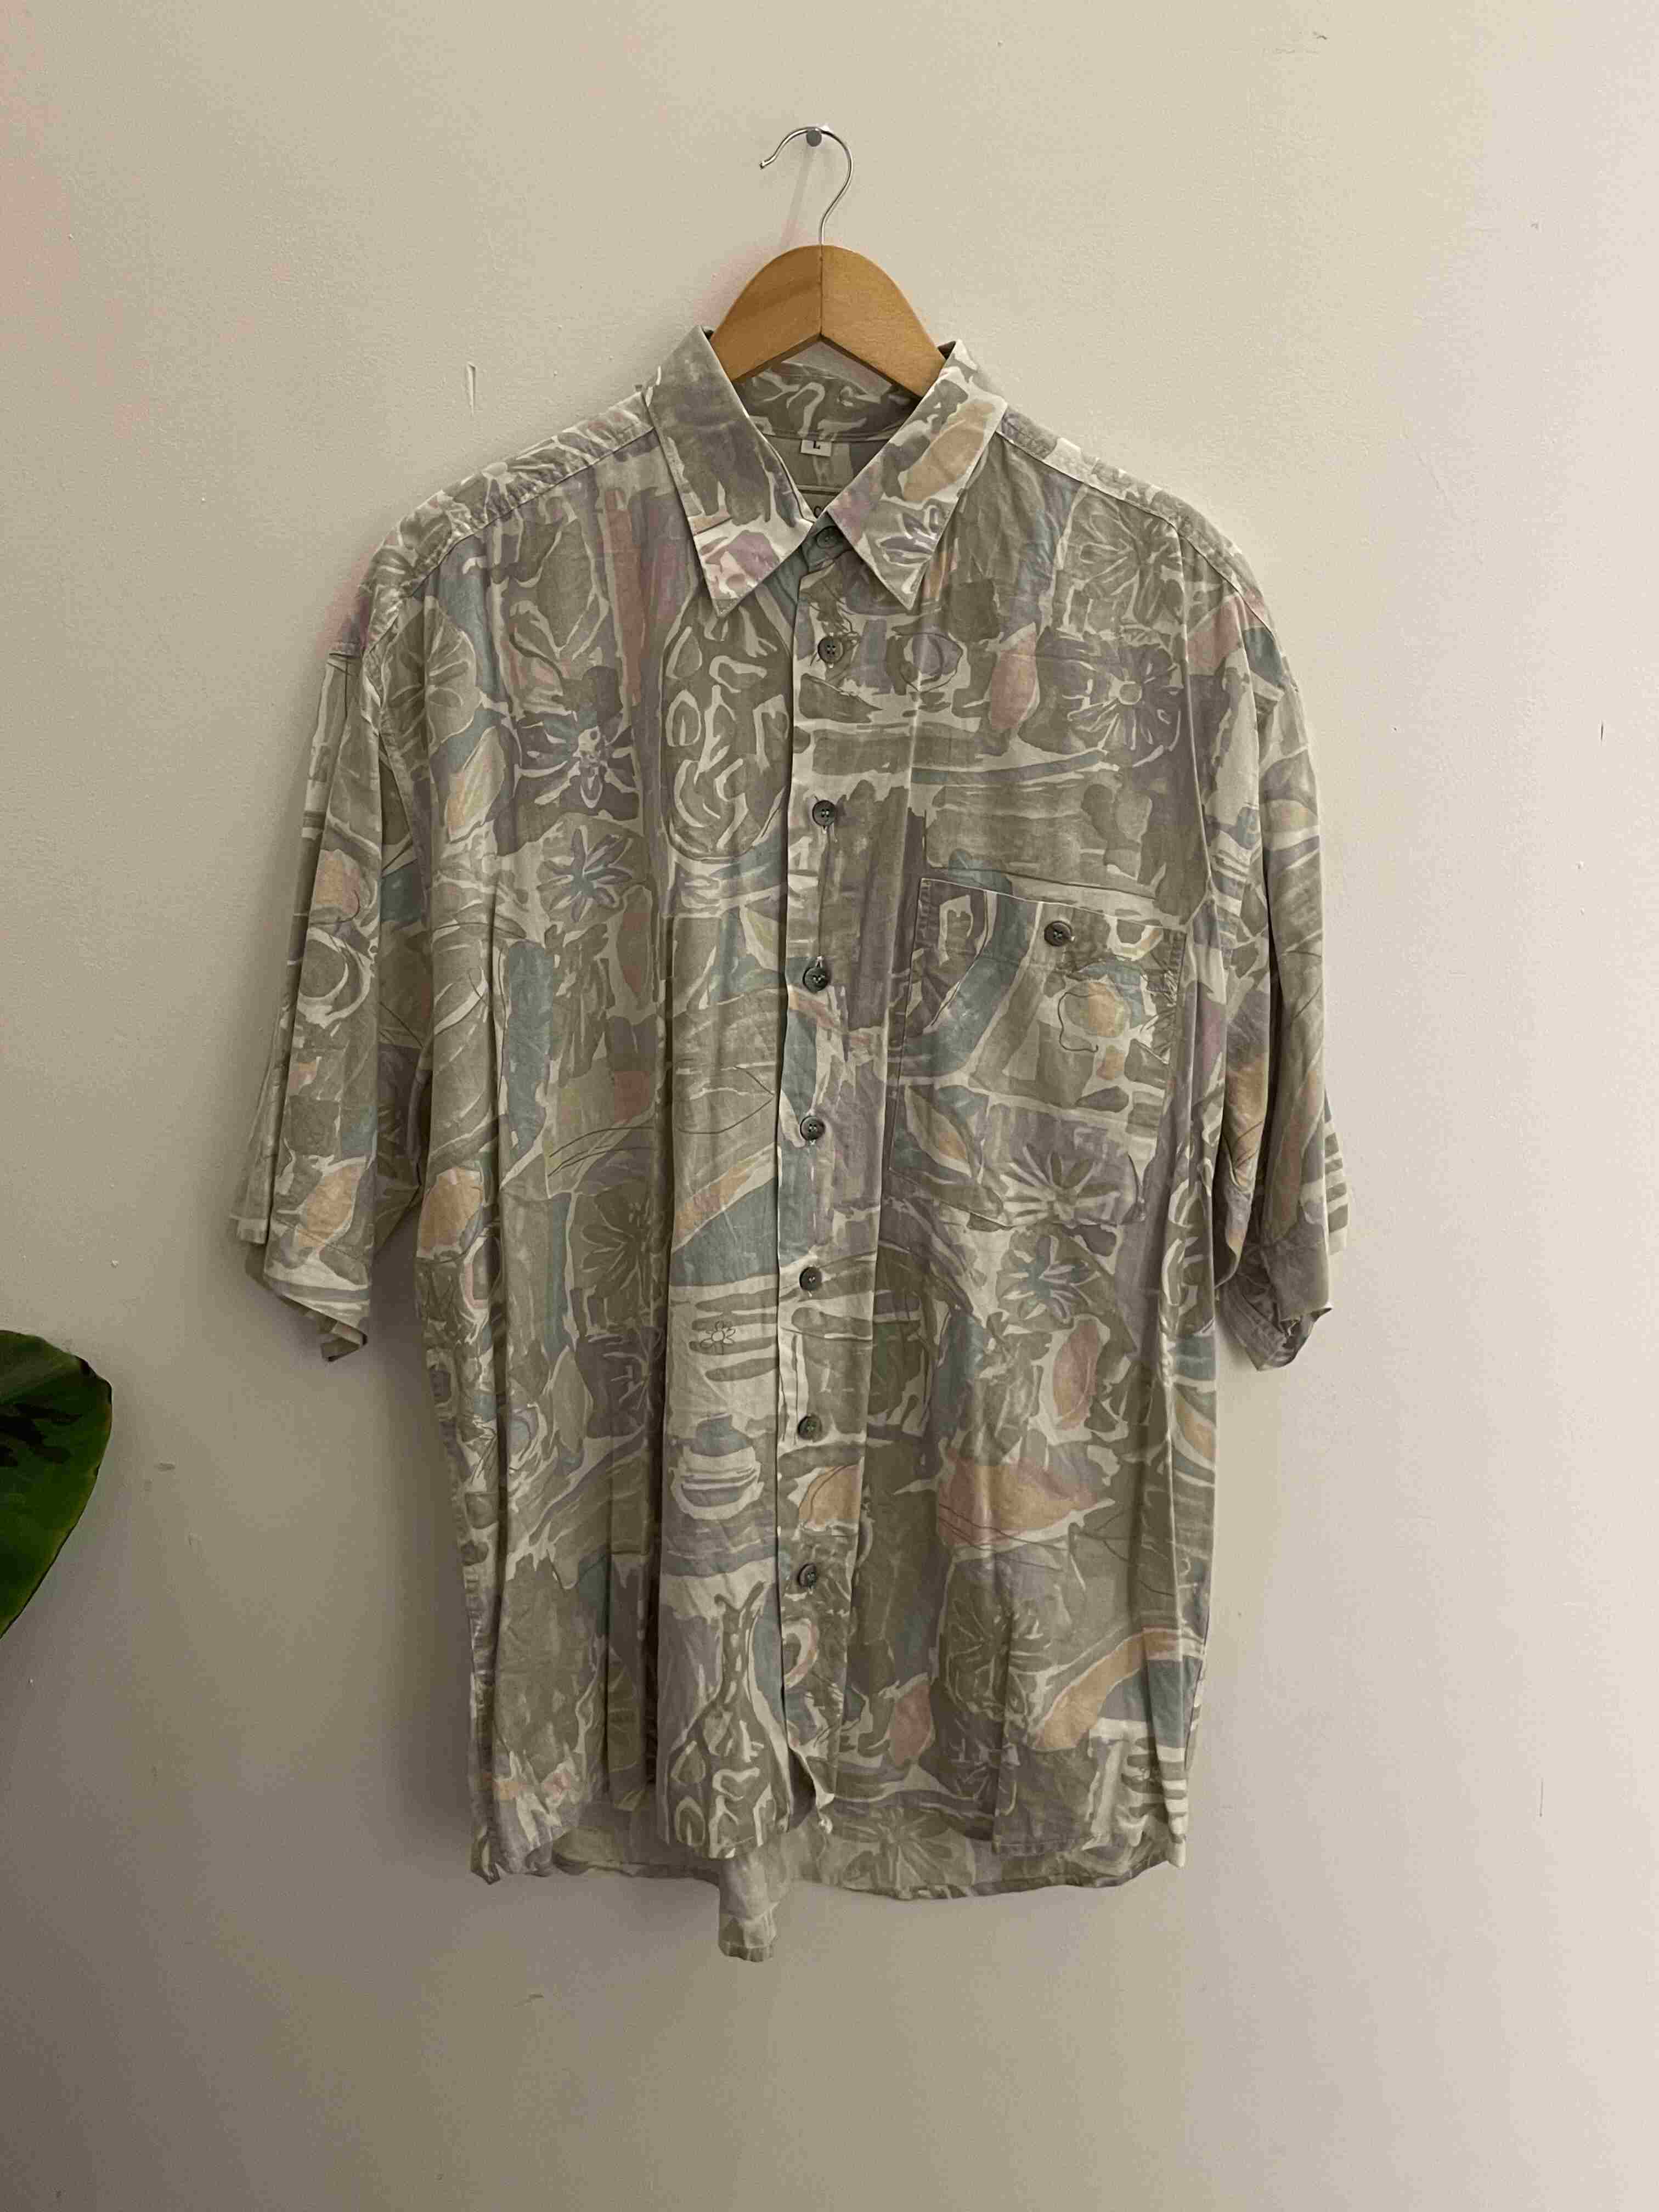 Vintage Sieden sticker grey abstract pattern large shirt